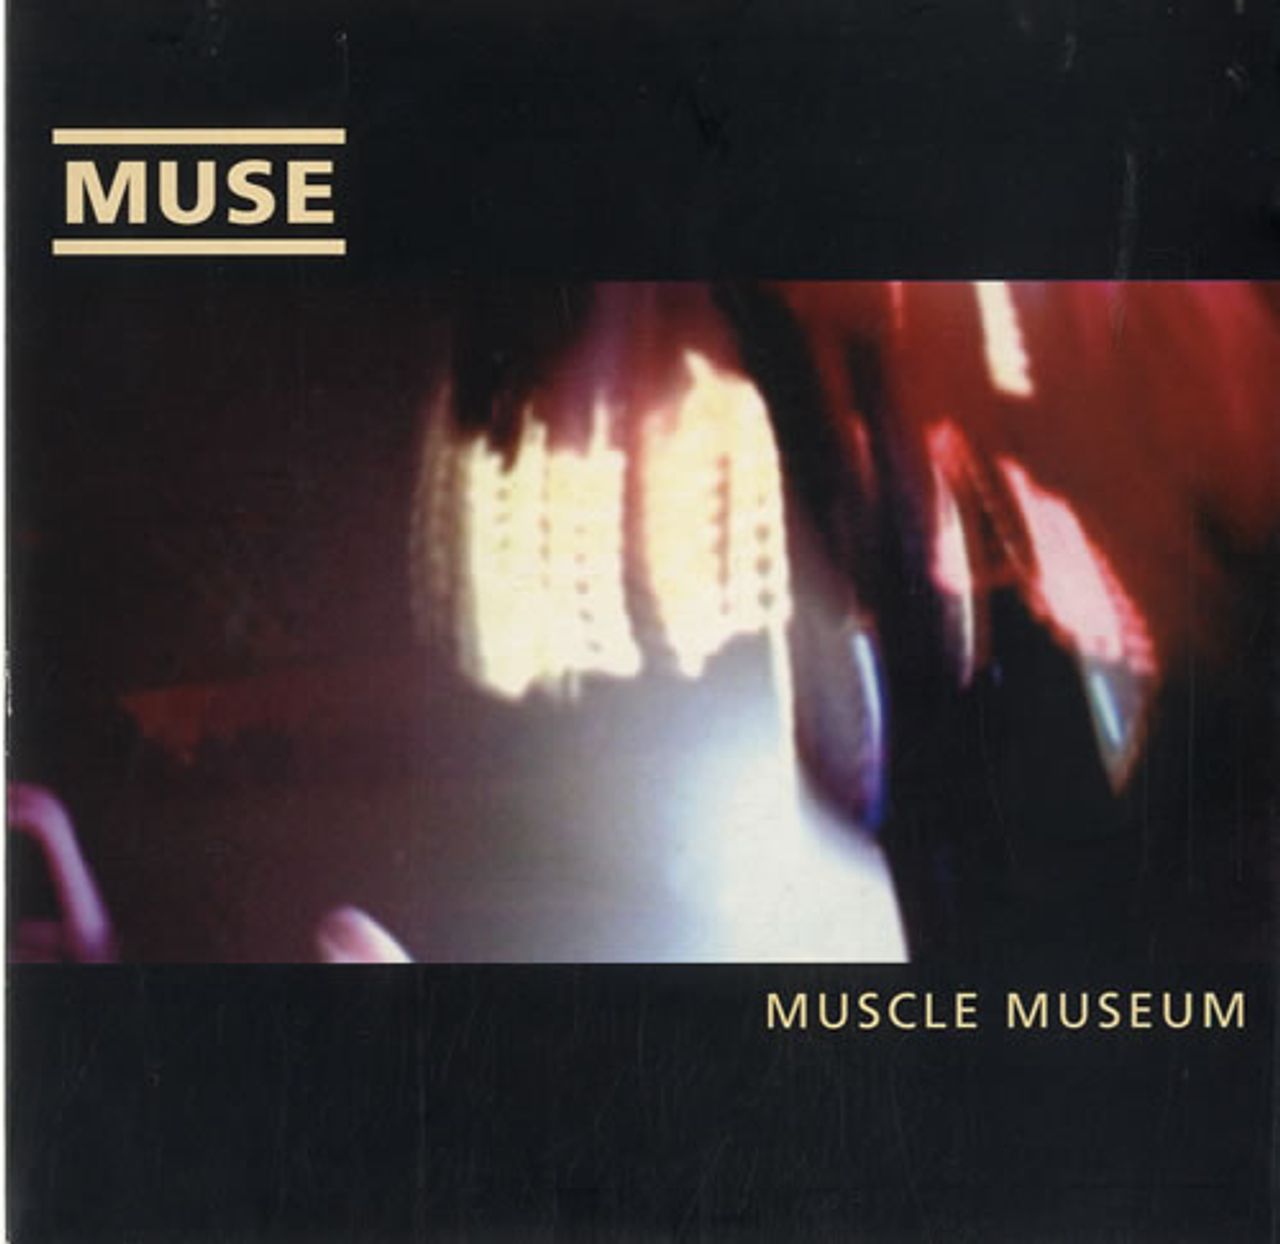 Muse — Minimum cover artwork